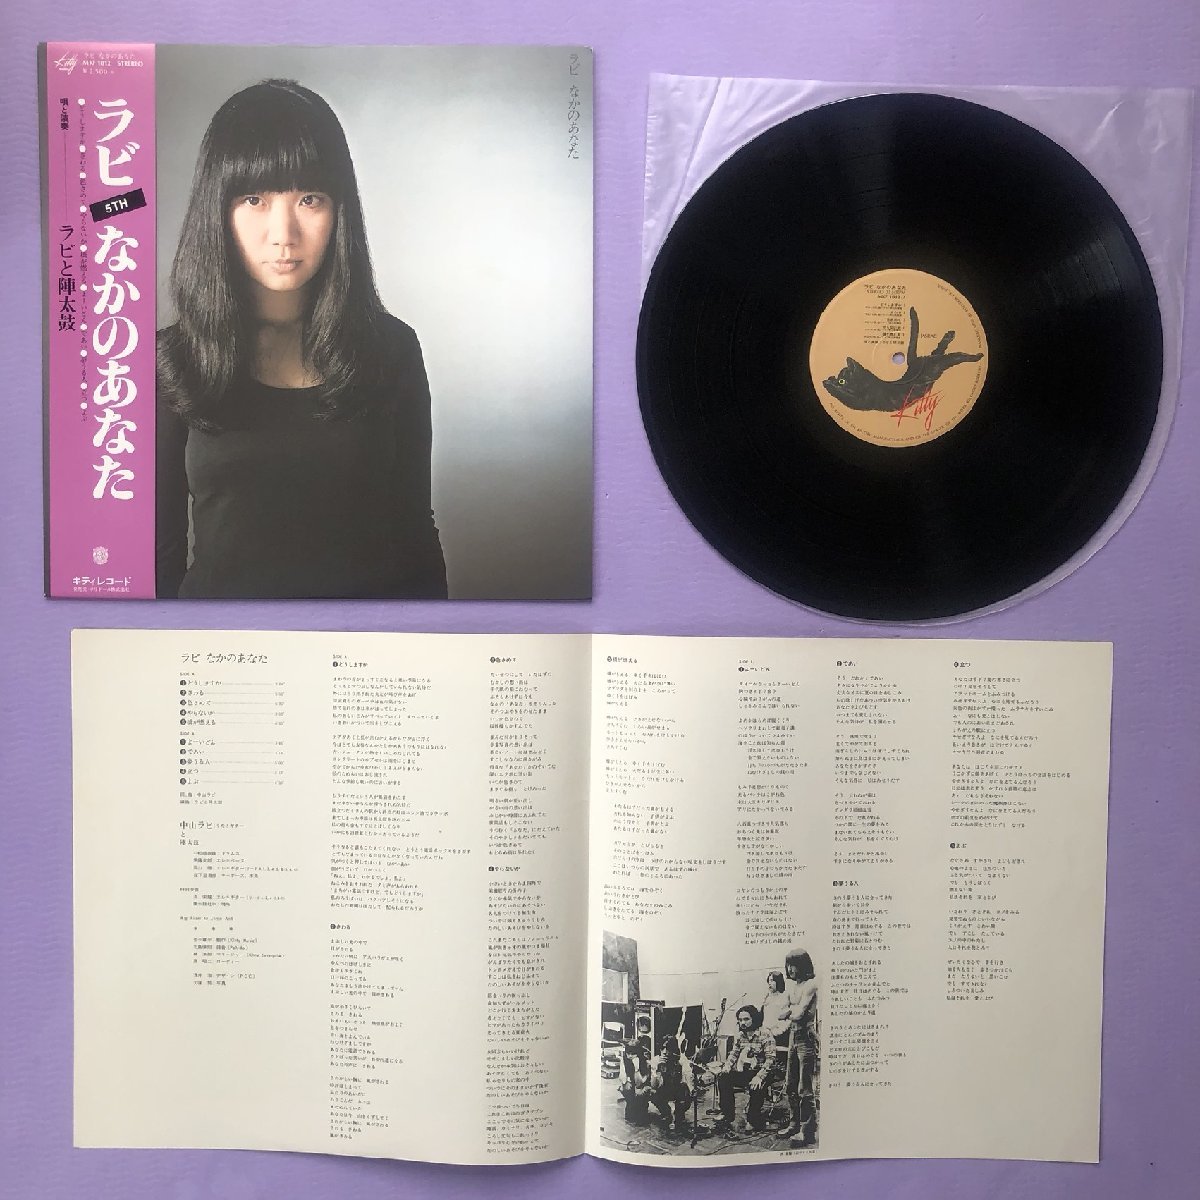 傷なし美盤 中山ラビ Rabi Nakayama 1977年 LPレコード なかのあなた オリジナルリリース盤 帯付 陣太鼓_画像5